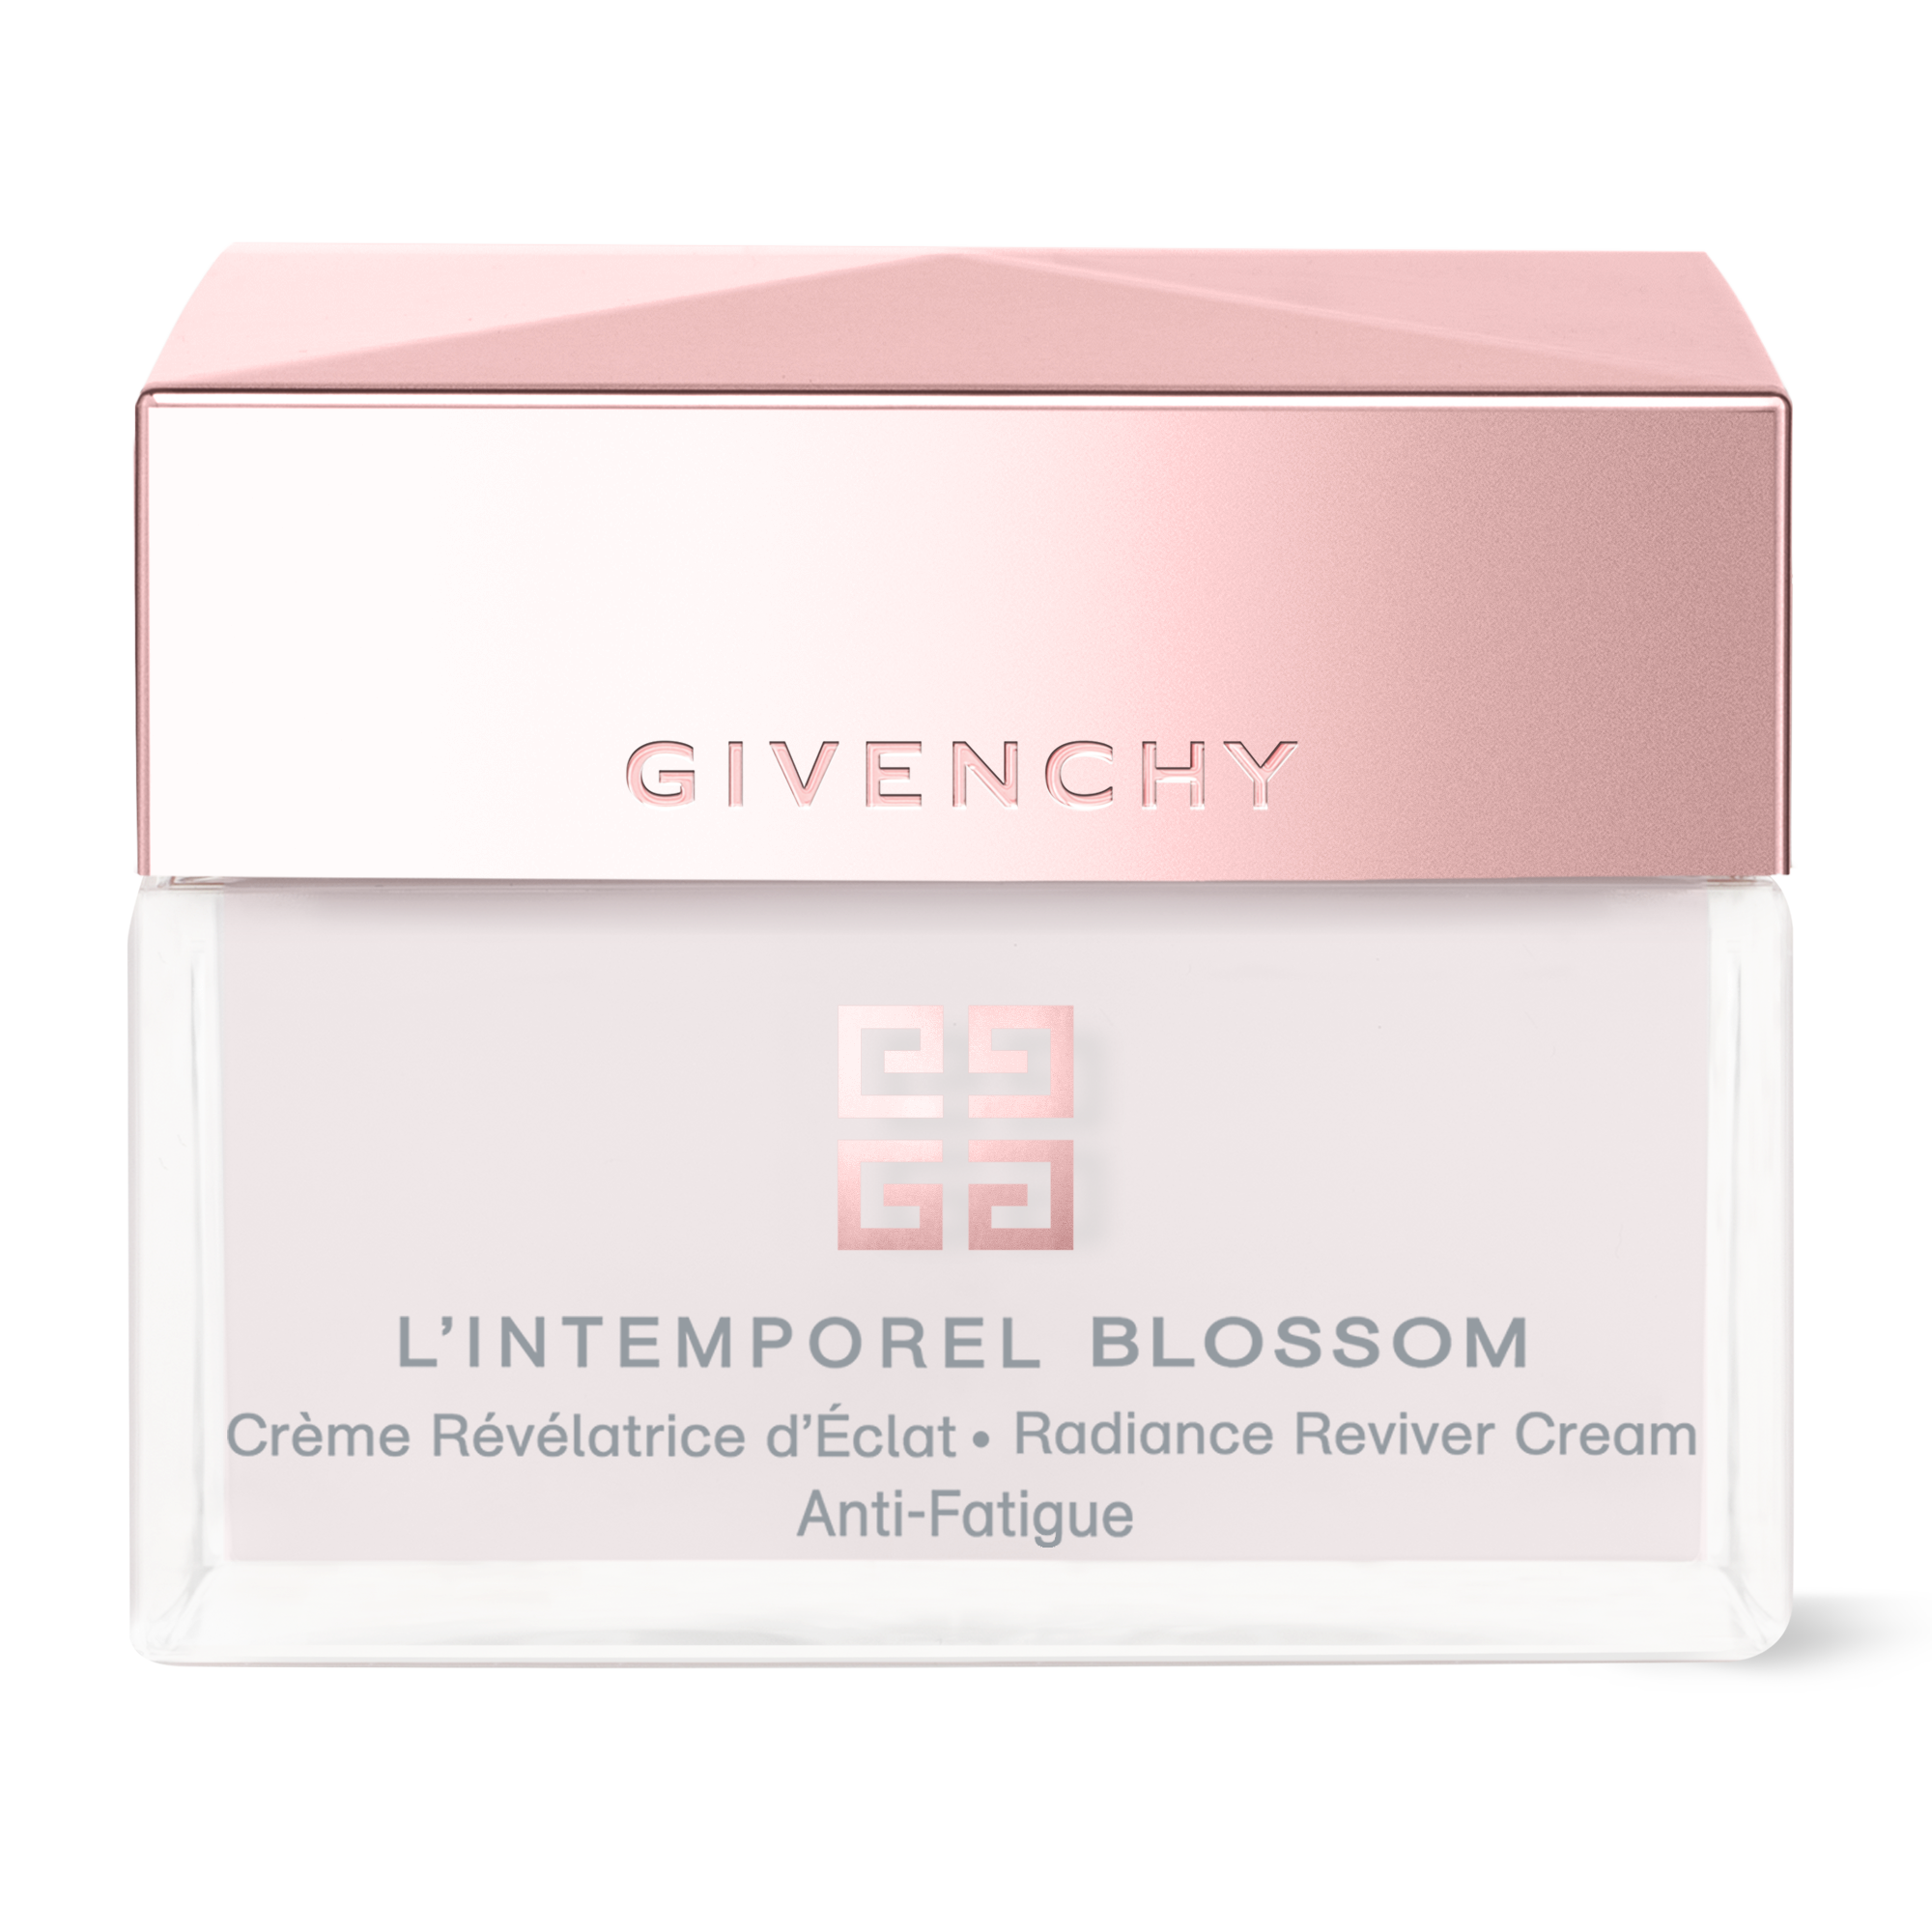 L'INTEMPOREL BLOSSOM • Radiance Reviver Cream Anti-Fatigue ∷ GIVENCHY